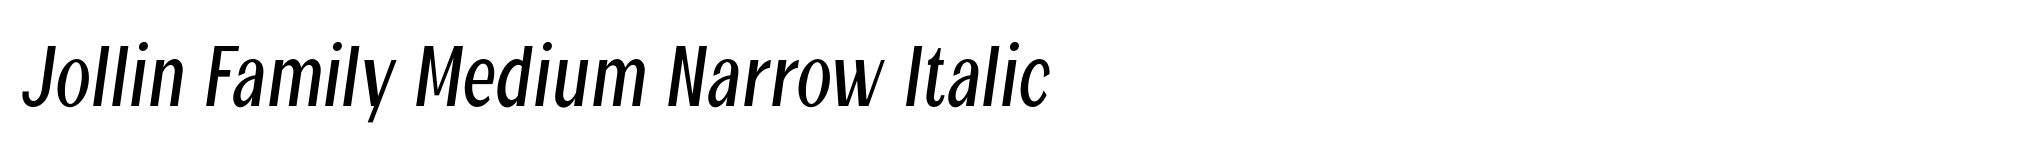 Jollin Family Medium Narrow Italic image